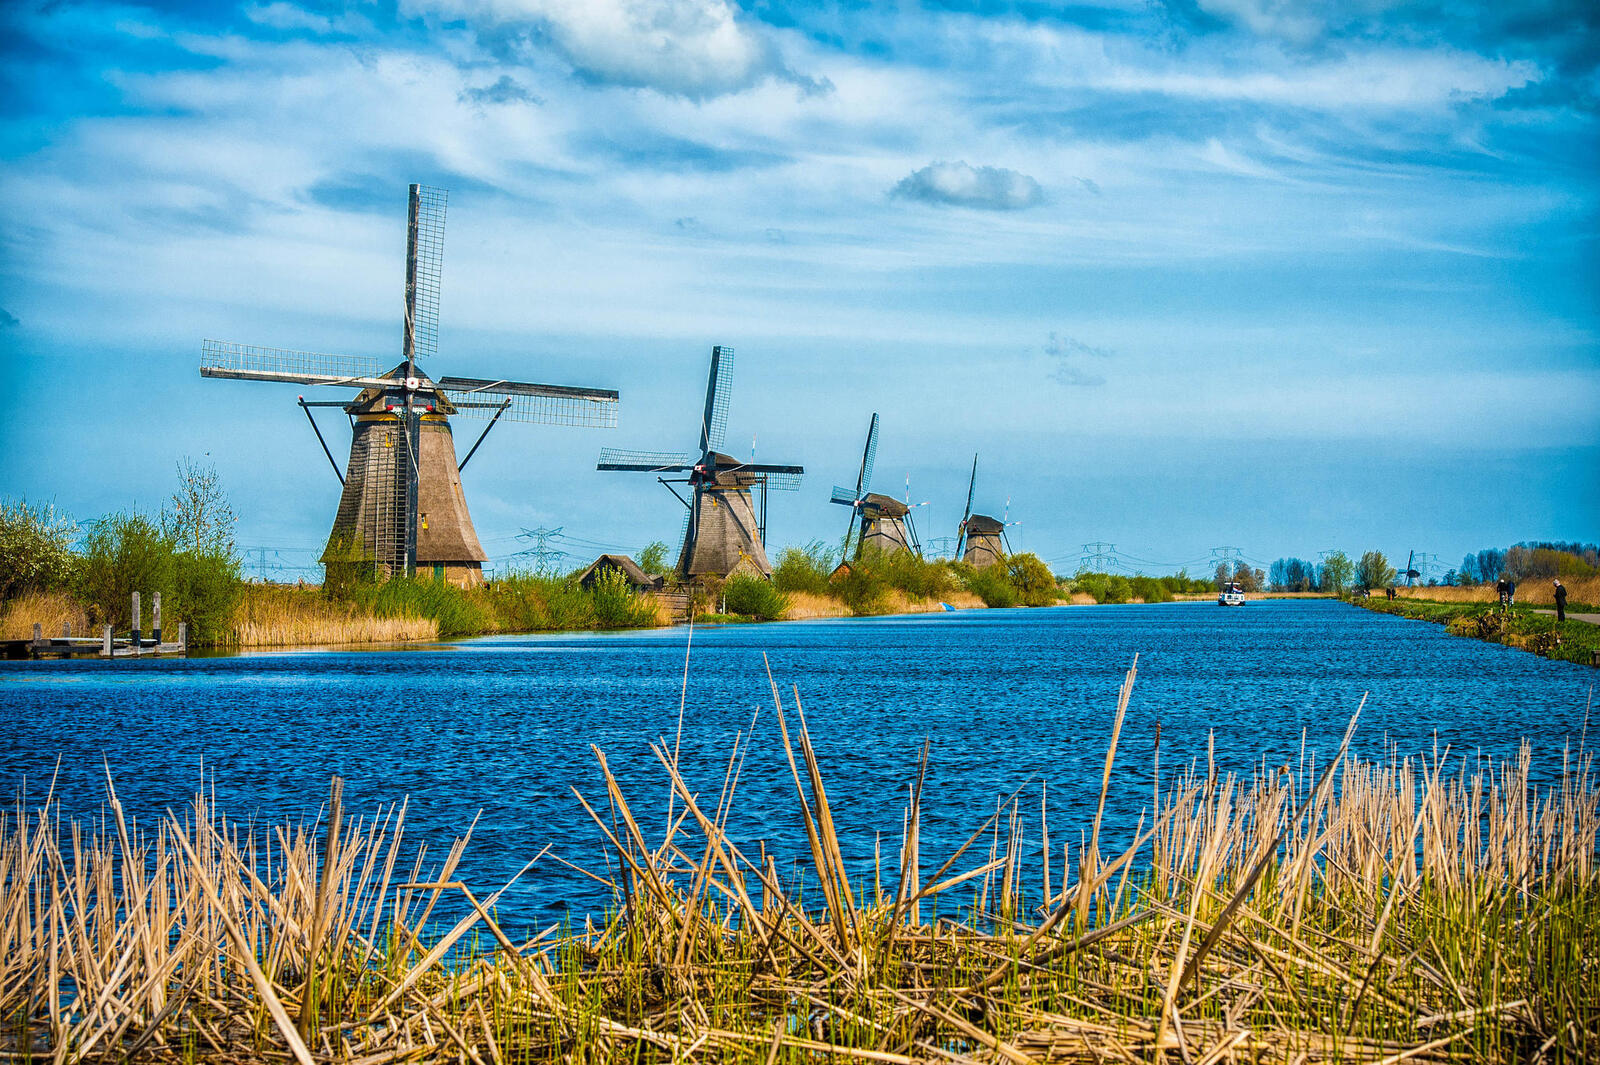 Обои Kinderdijk Нидерланды Голландия на рабочий стол